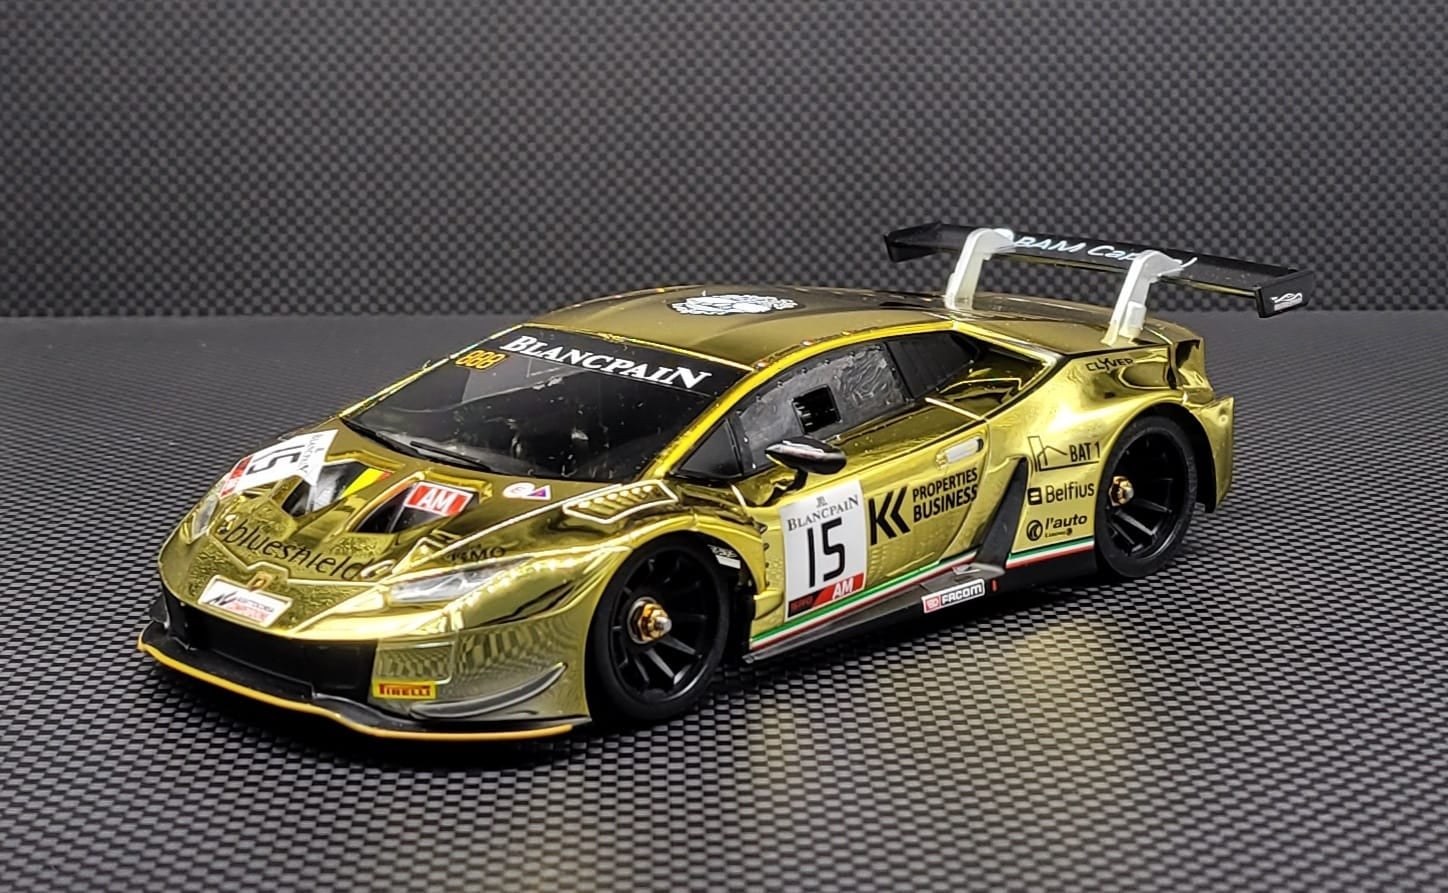 GL Lamborghini GT3 - Limited Edition No. 006 (Chrome Gold)